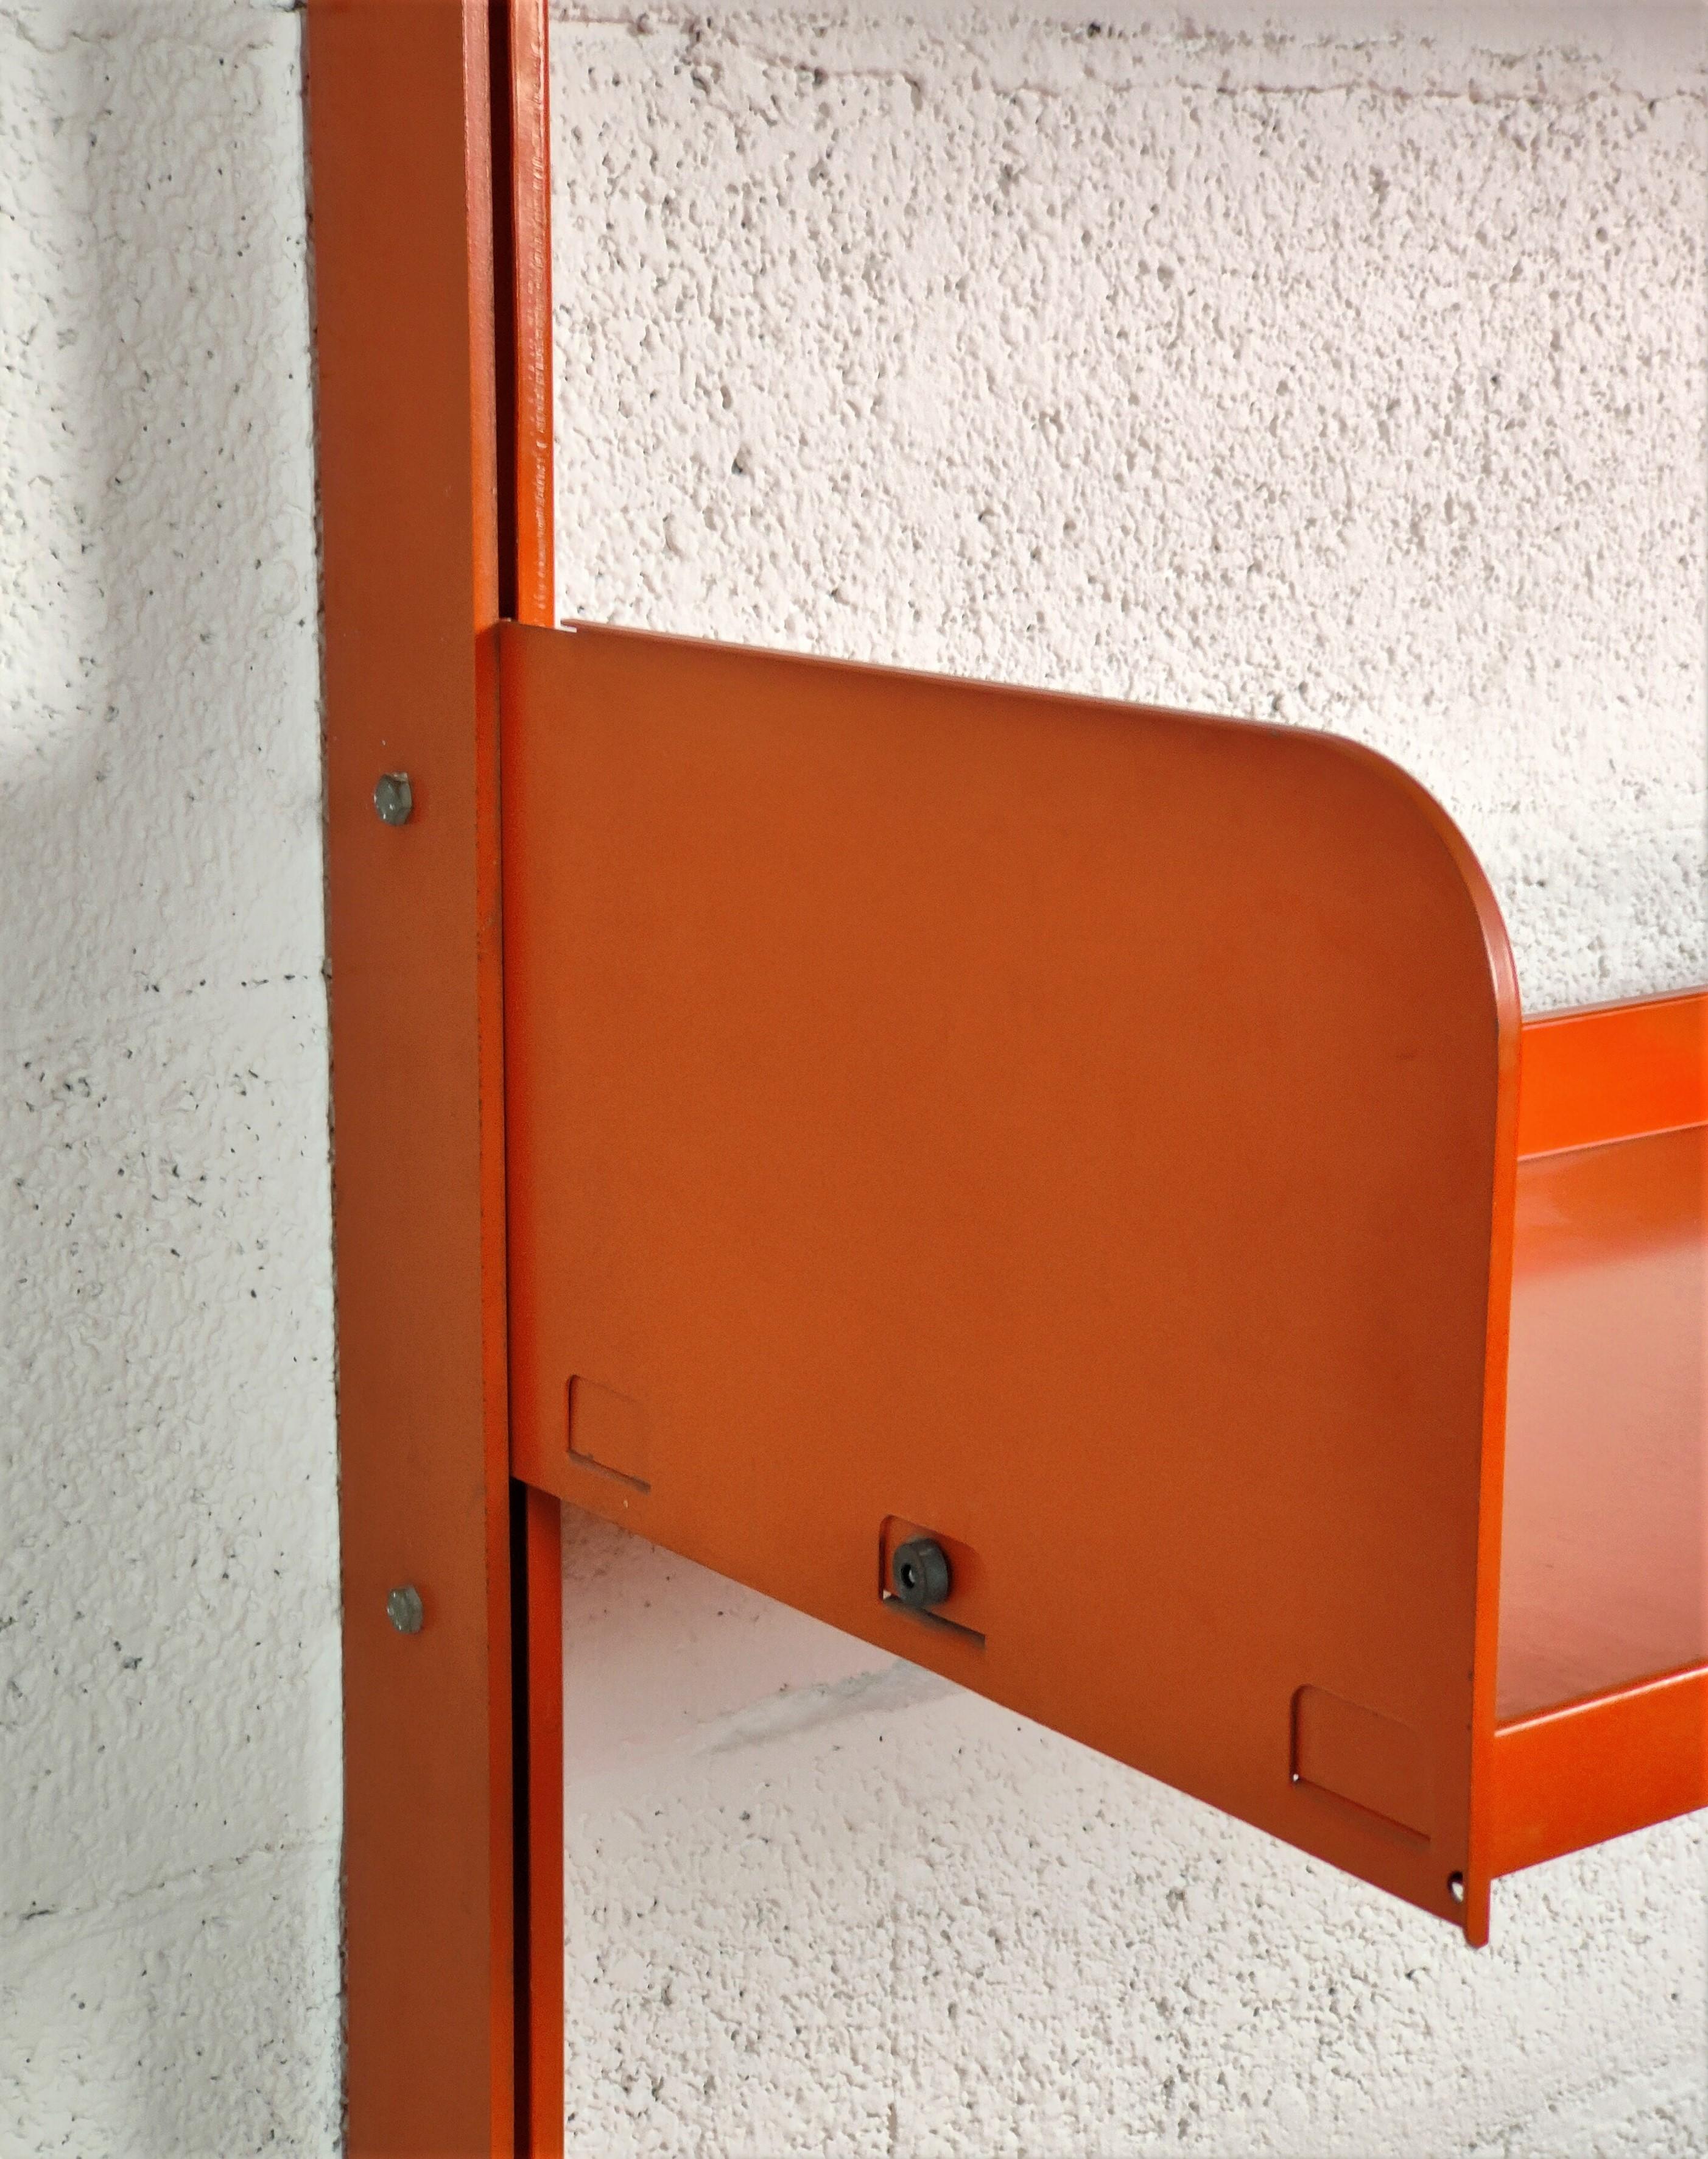 Italian Congresso by Lips Vago Metal Red Orange Bookcase 60s